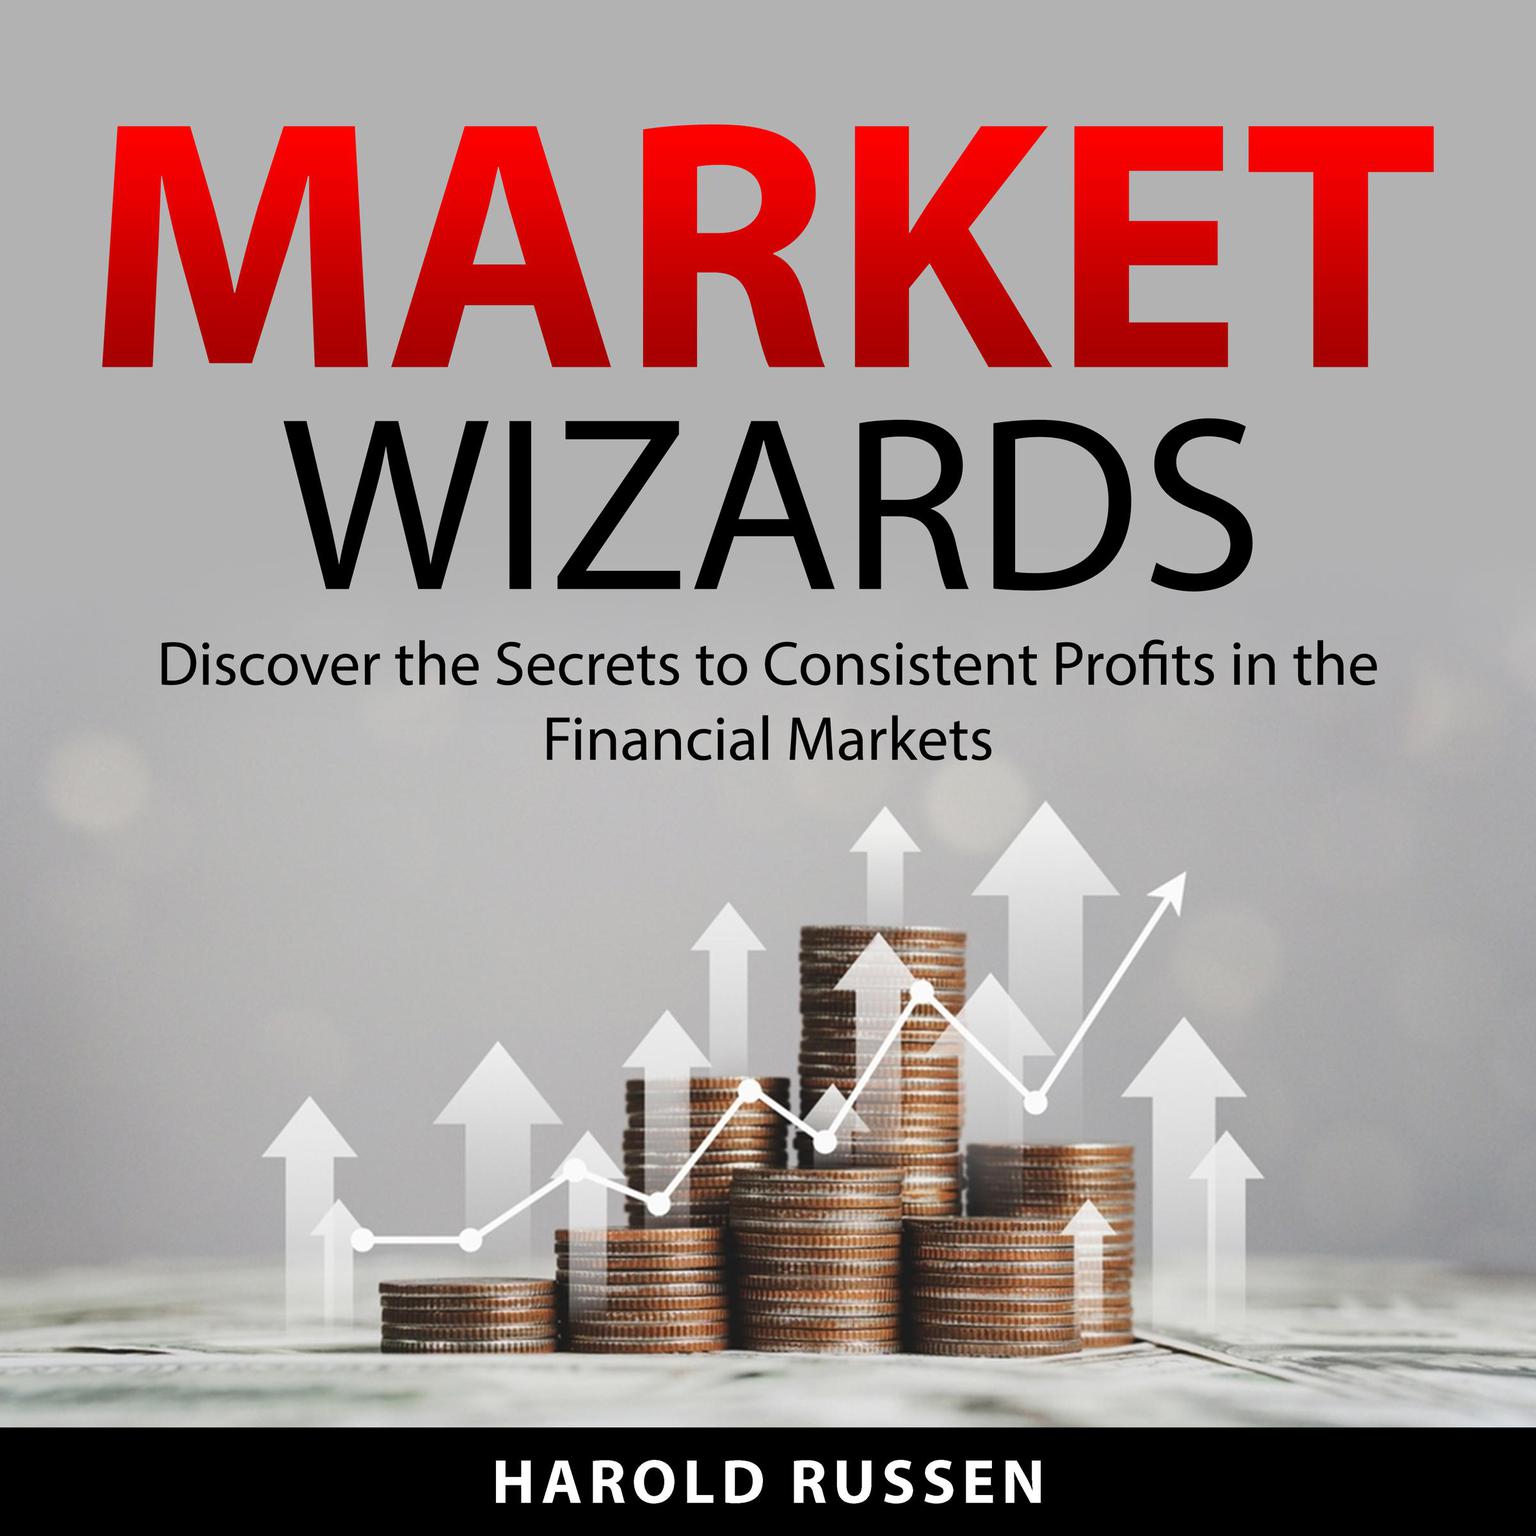 Market Wizards Audiobook, by Harold Russen